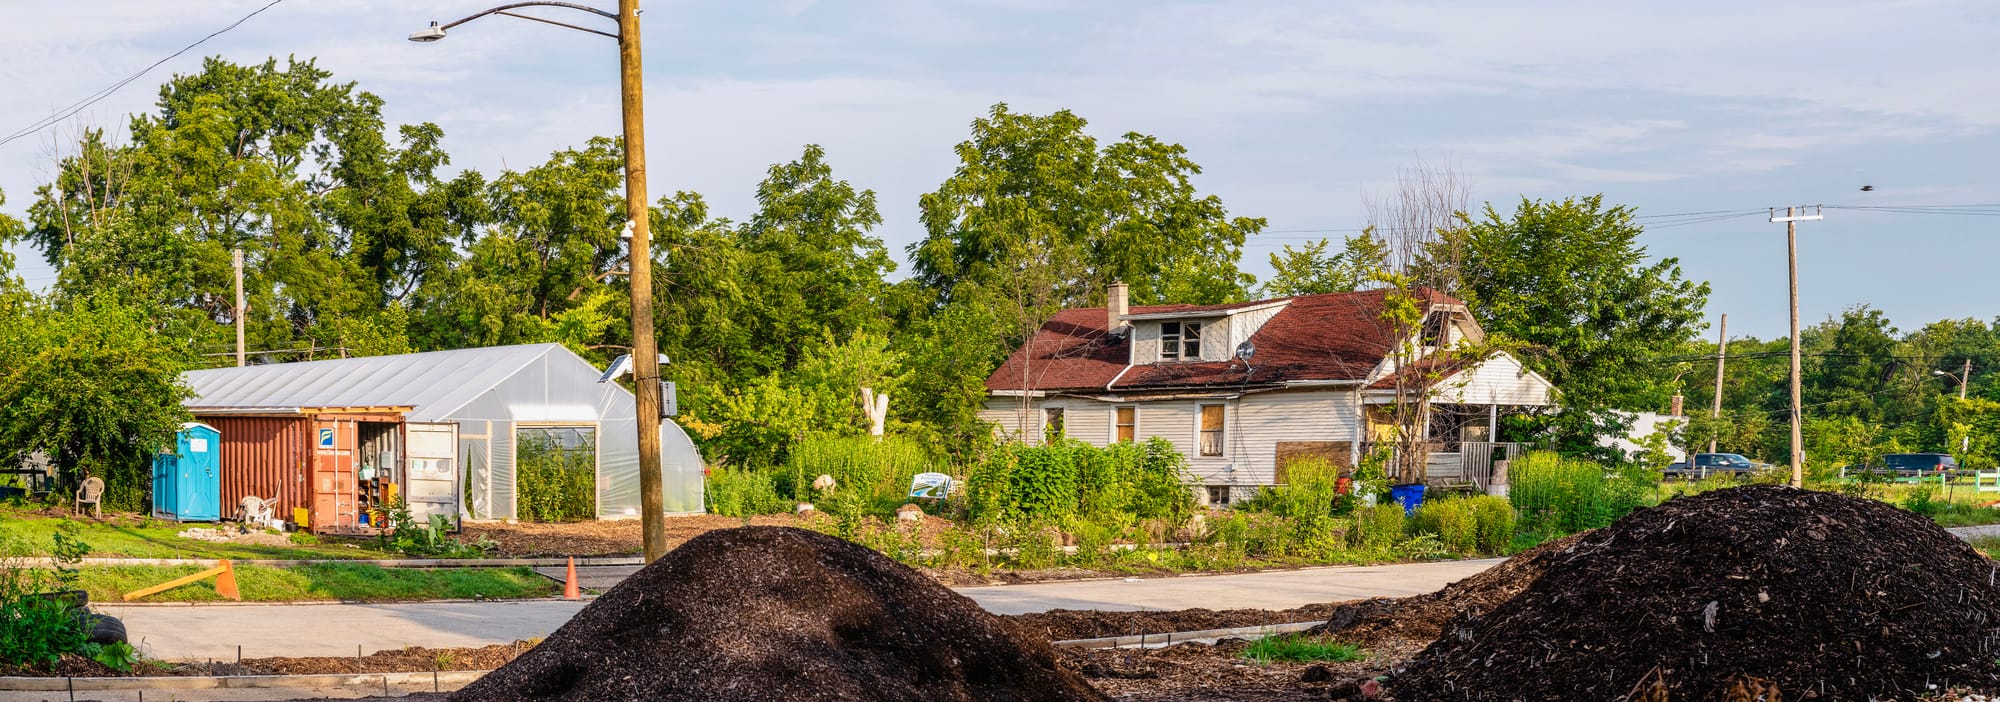 Introducing Urban Farm & Composting Site Sanctuary Farms, Detroit